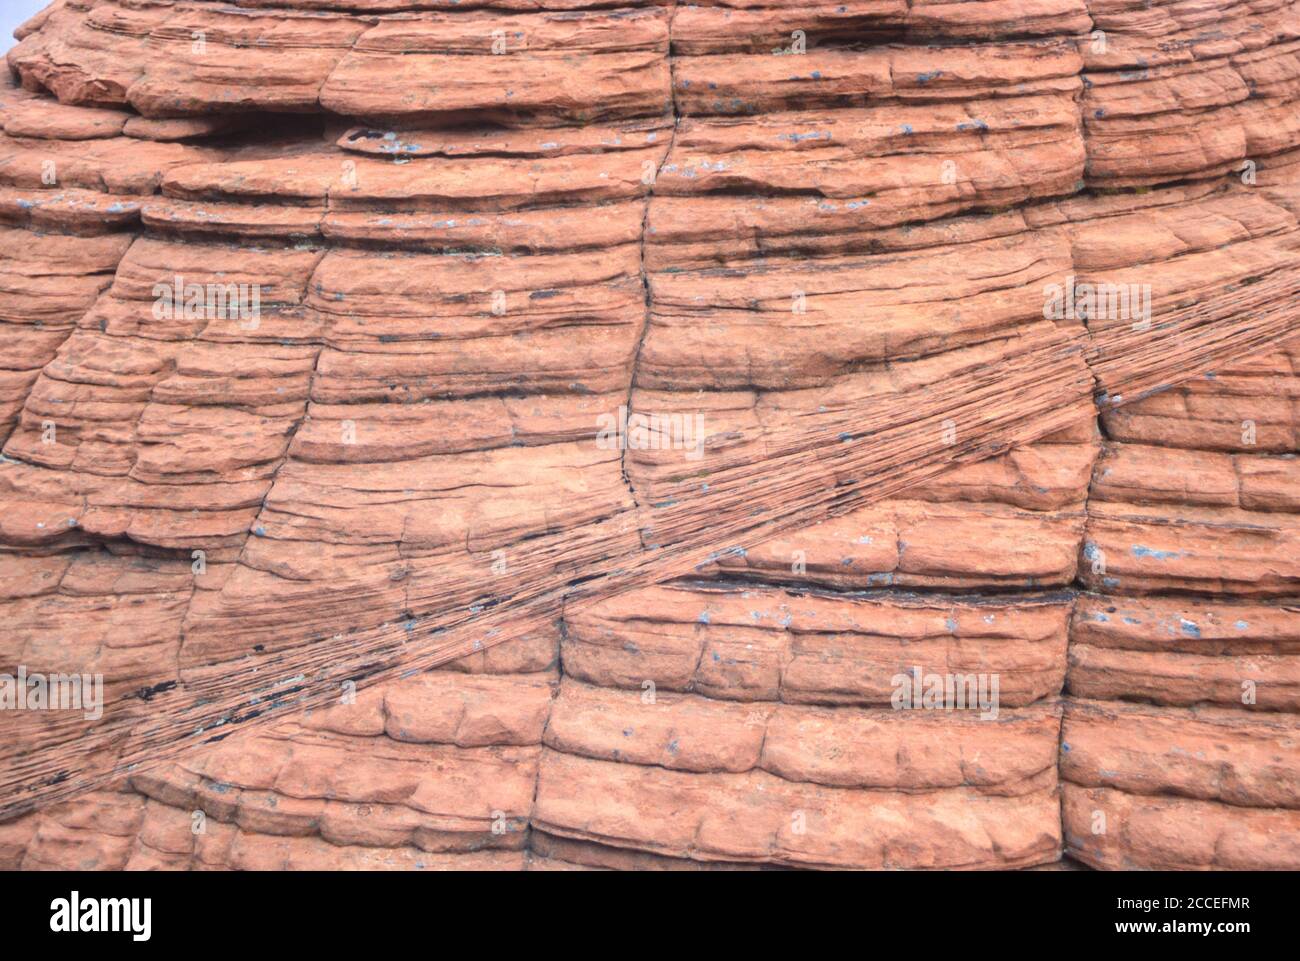 Geologie. Felsschlieren und Banderungen. Bienenstock Formation, Valley of Fire, Nevada, USA. Stockfoto